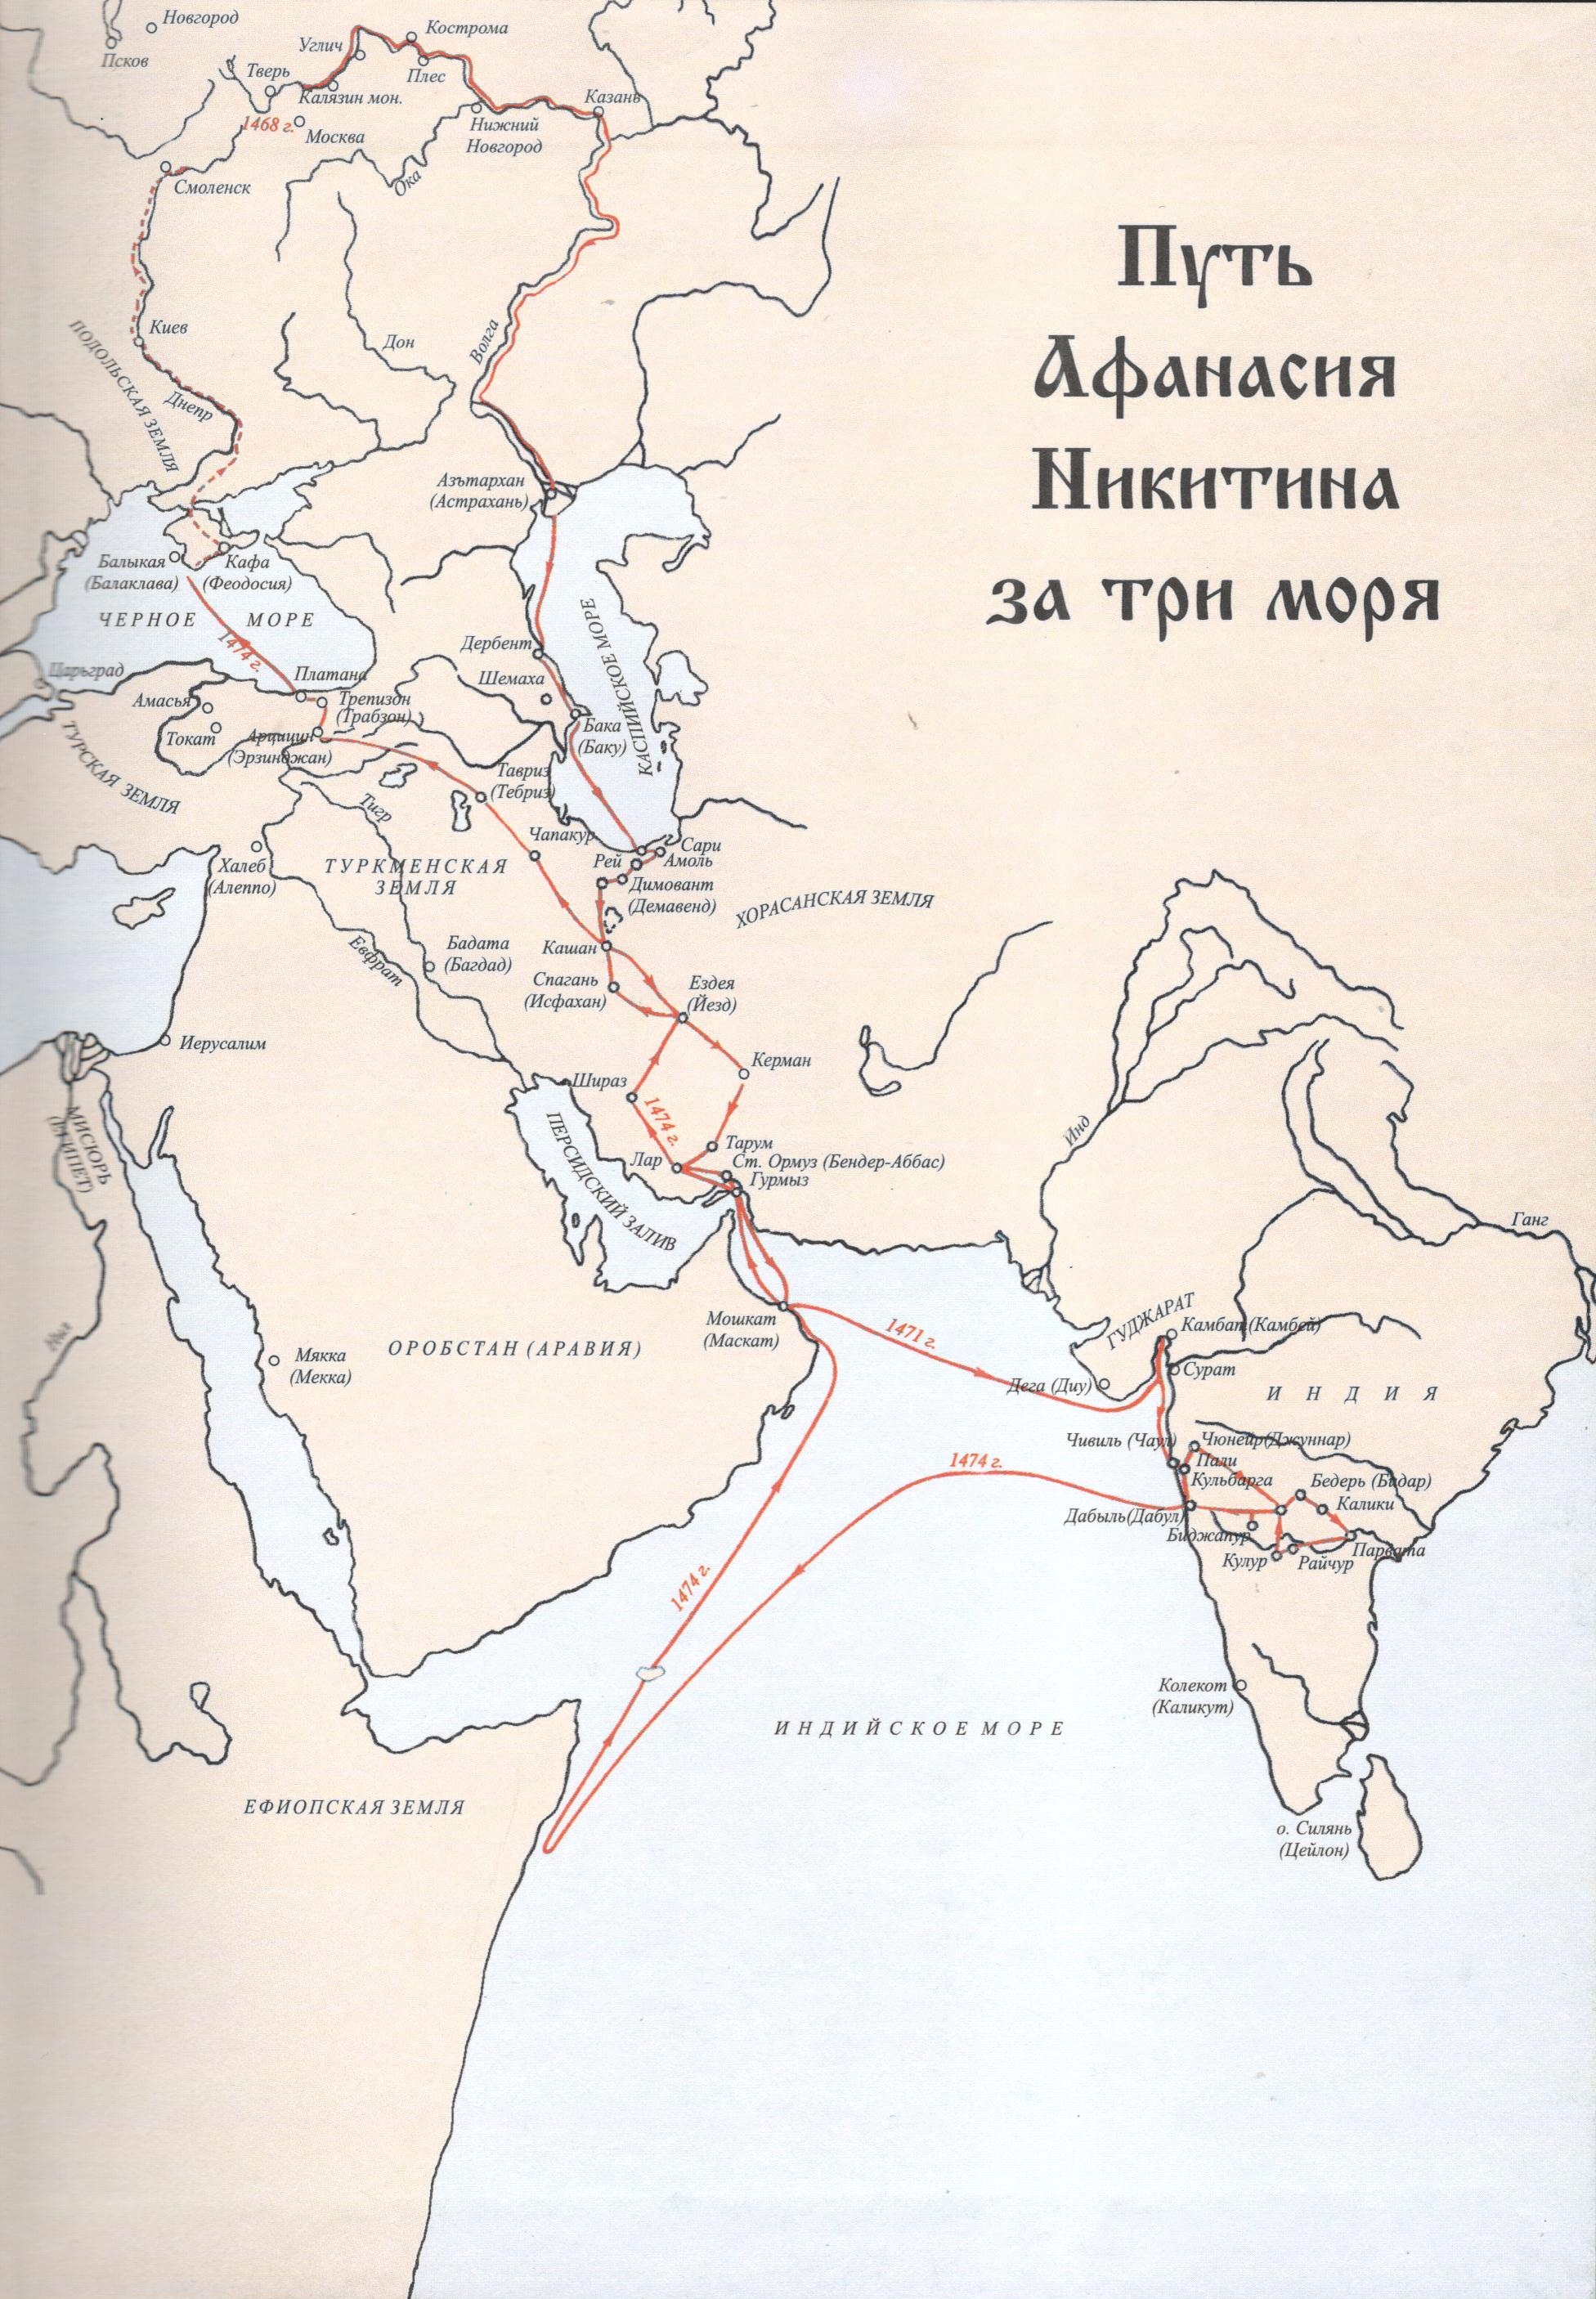 Карта путешествий А. Никитина.jpg